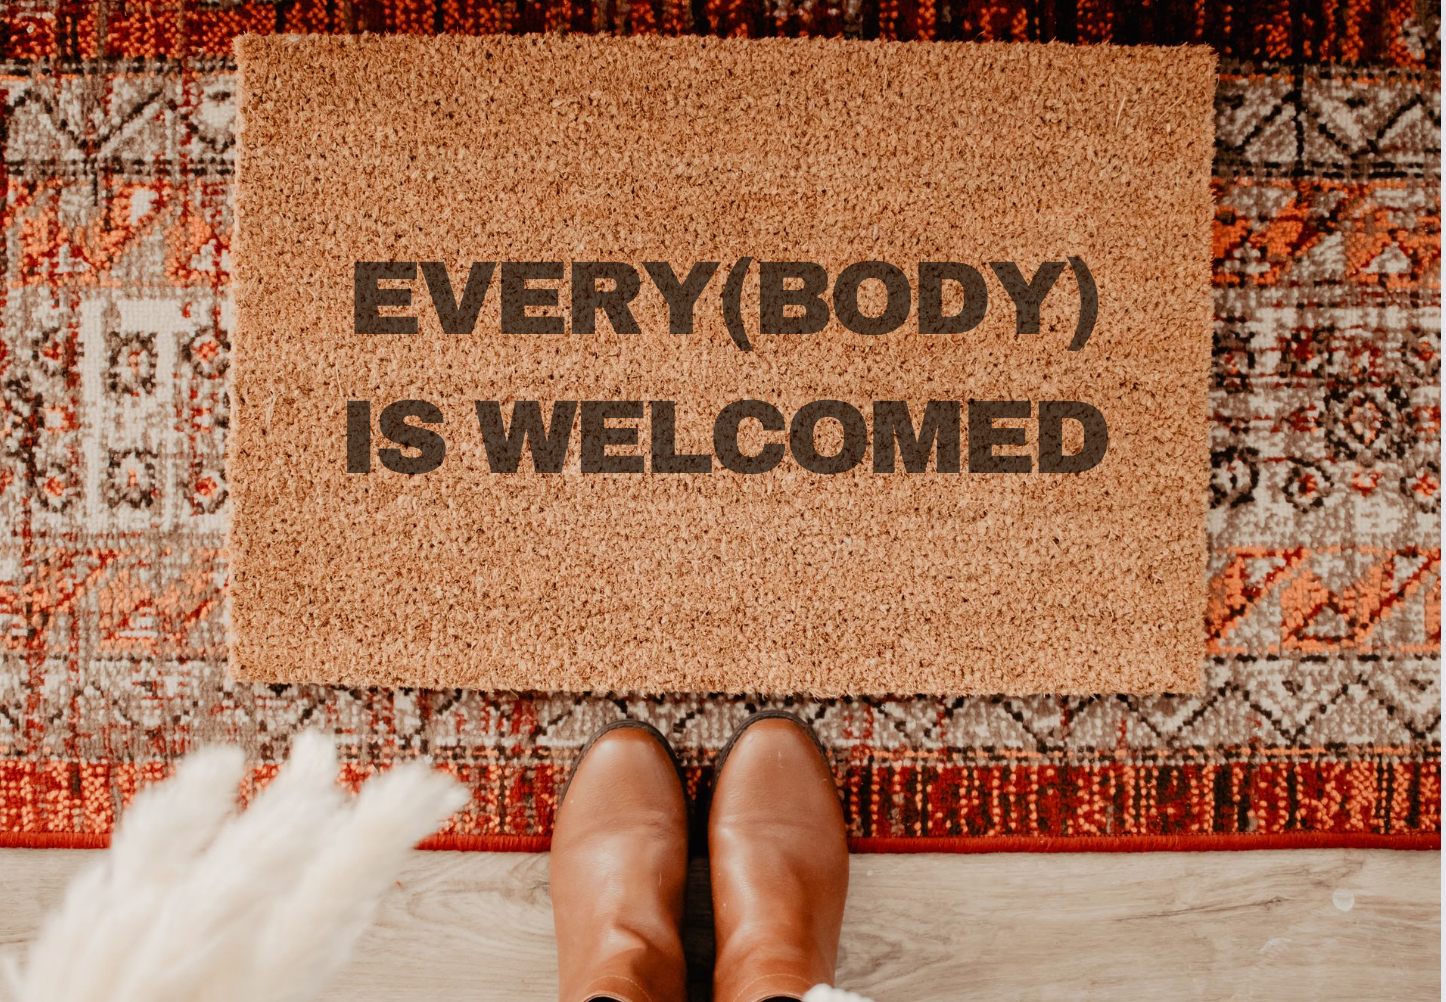 Doormat: EveryBODY is Welcomed